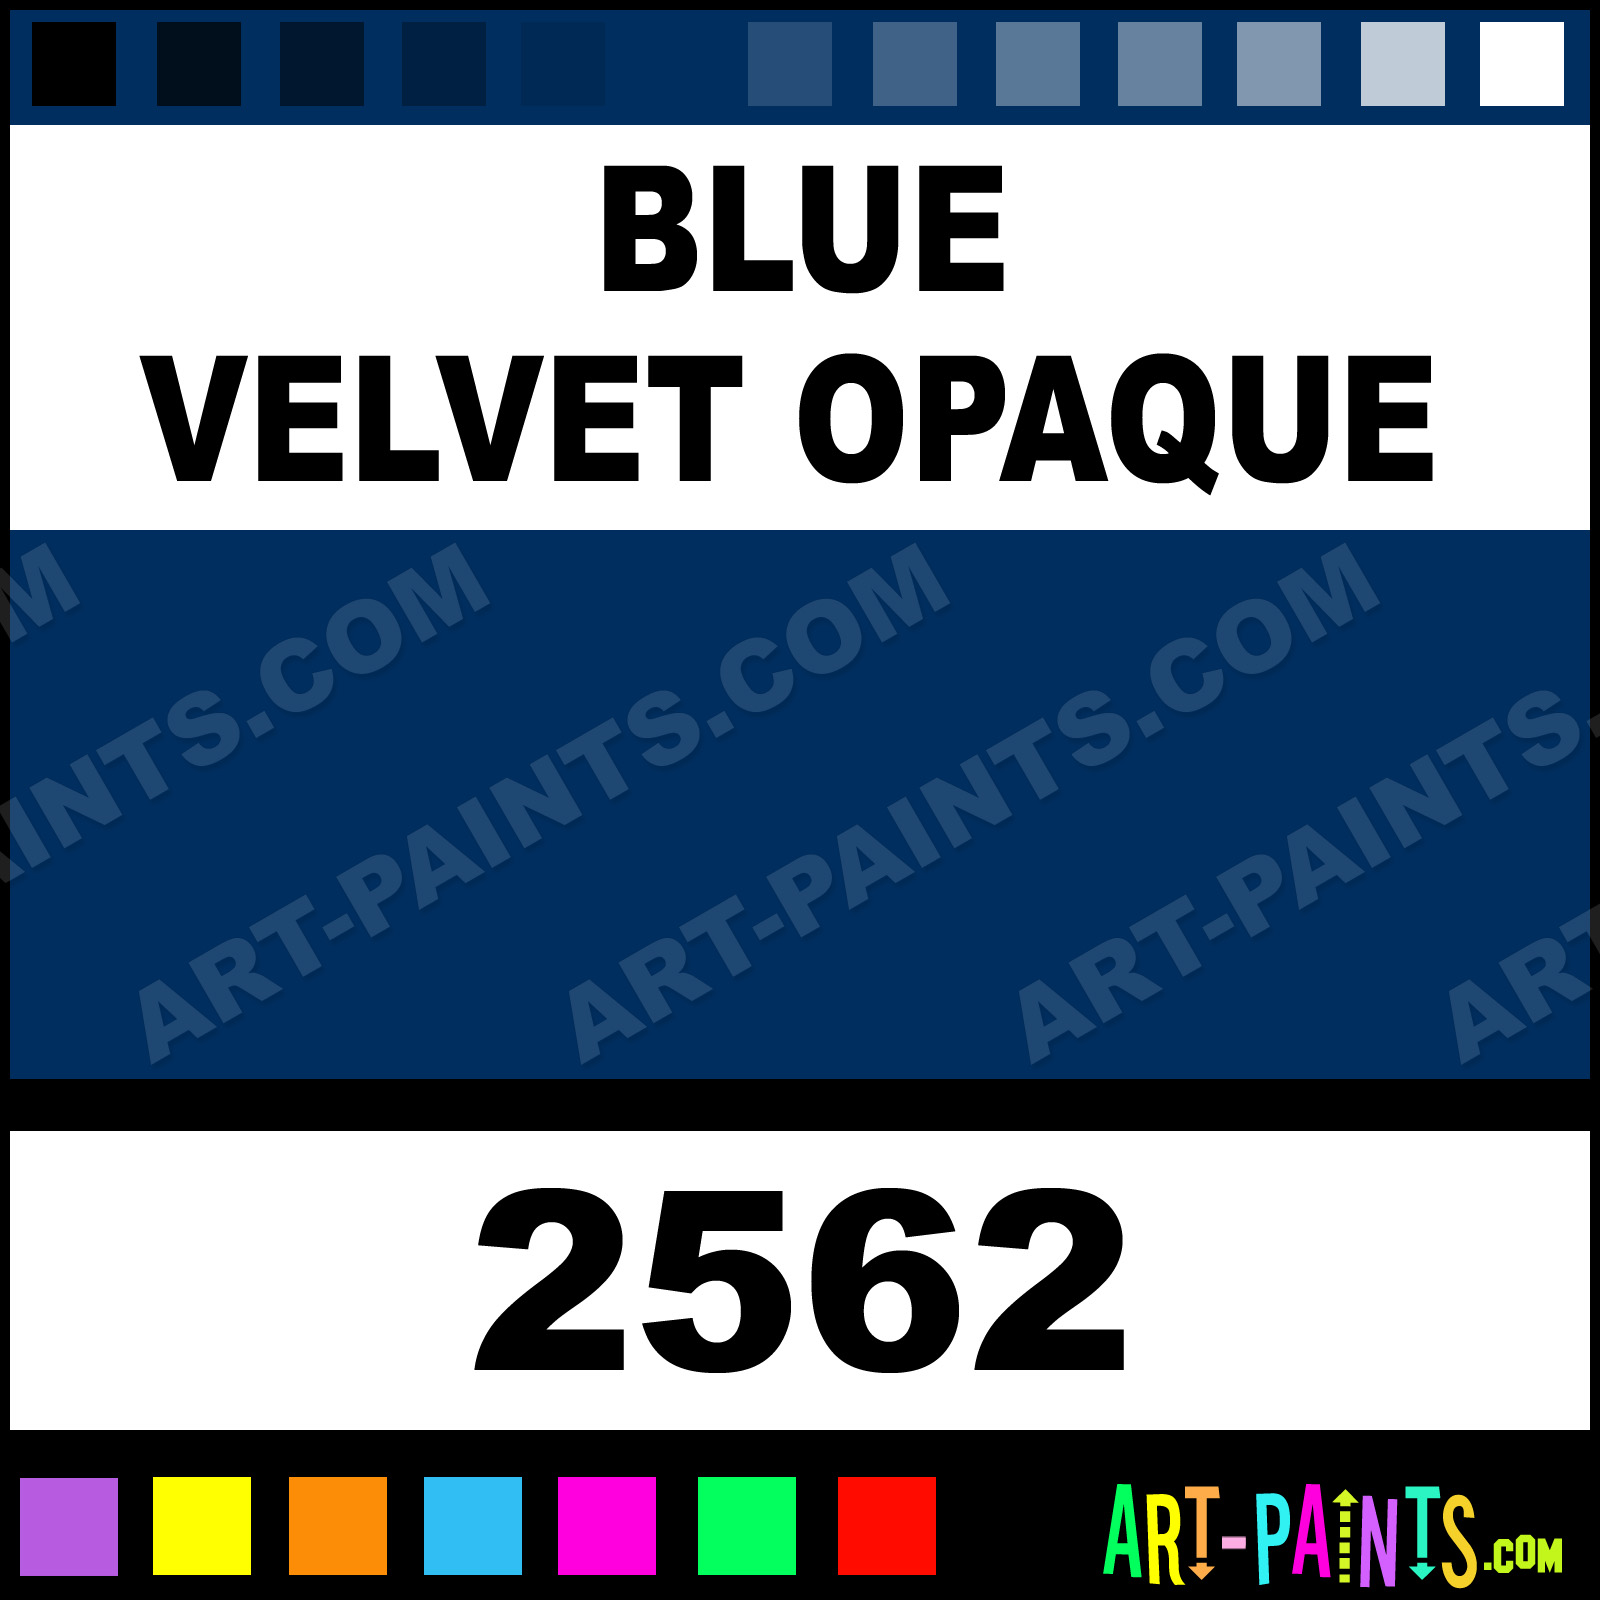 http://www.art-paints.com/Paints/Acrylic/Delta/Blue-Velvet-Opaque/Blue-Velvet-Opaque-xlg.jpg